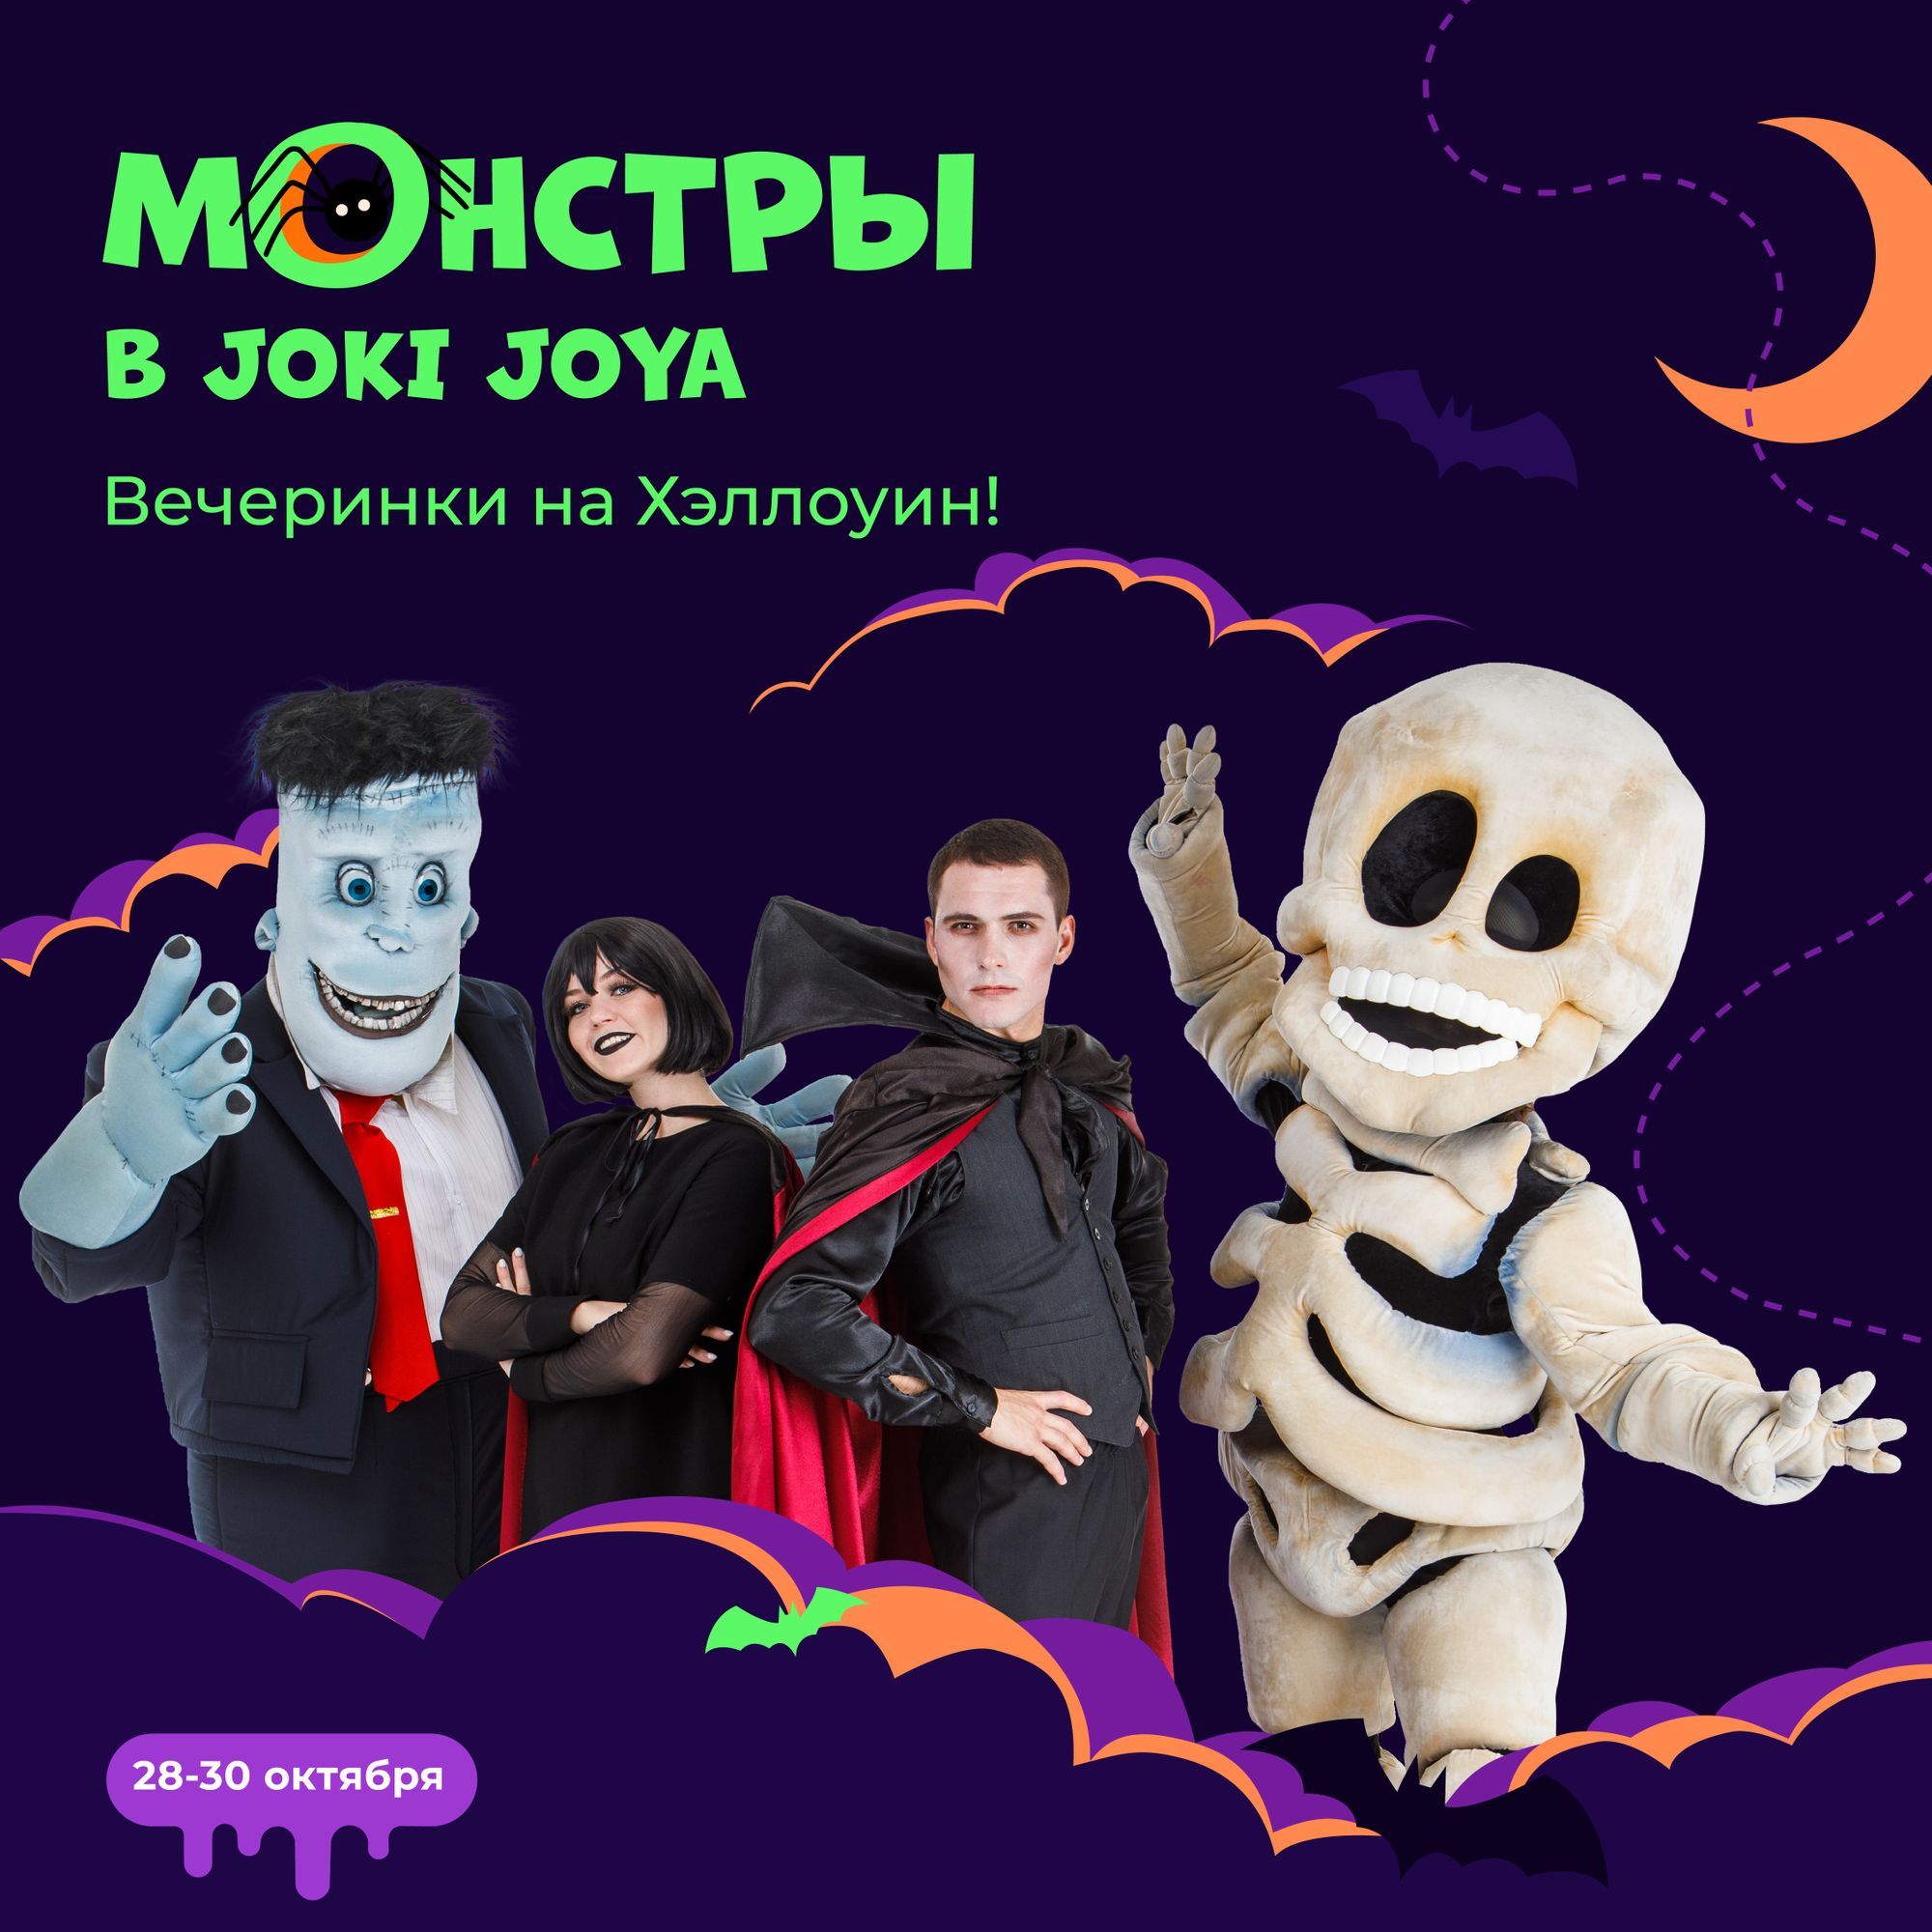 Монстры в Joki Joya — отмечаем Хэллоуин 🎃